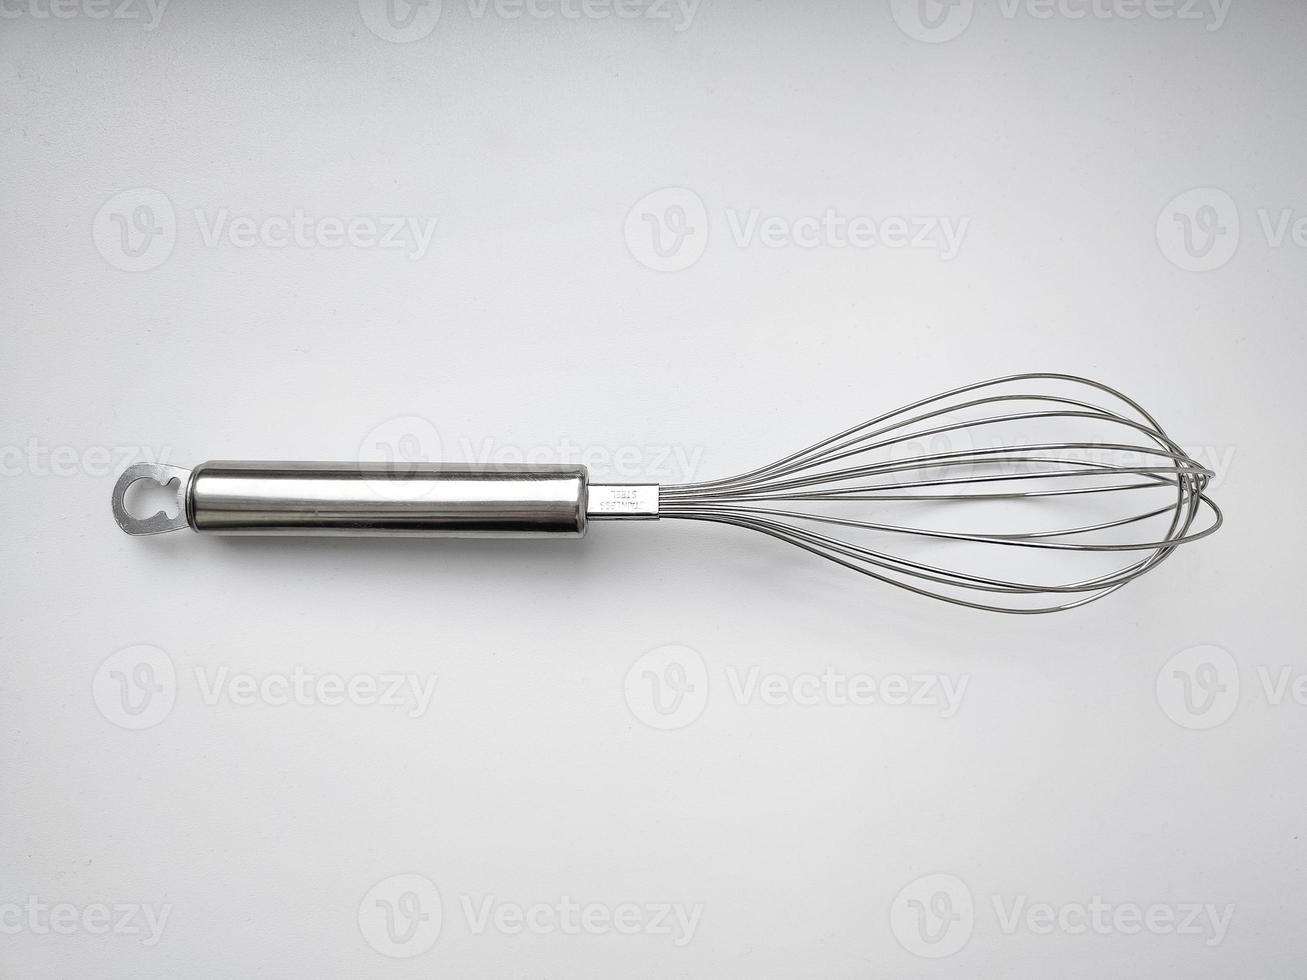 batedor de aço inoxidável em fundo branco. utensílio de cozinha foto